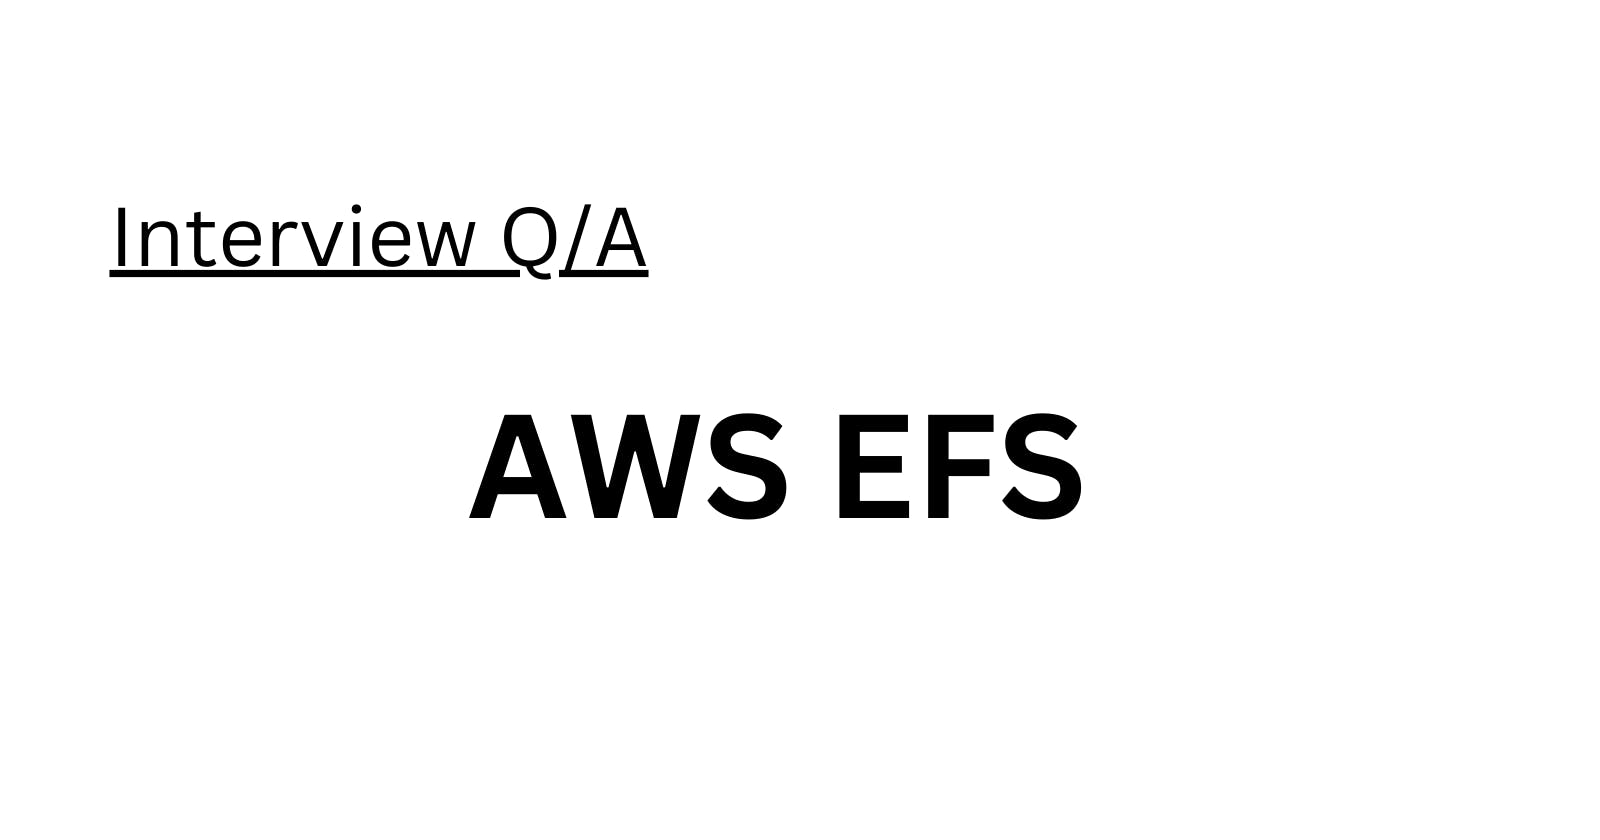 AWS EFS Interview Q/A